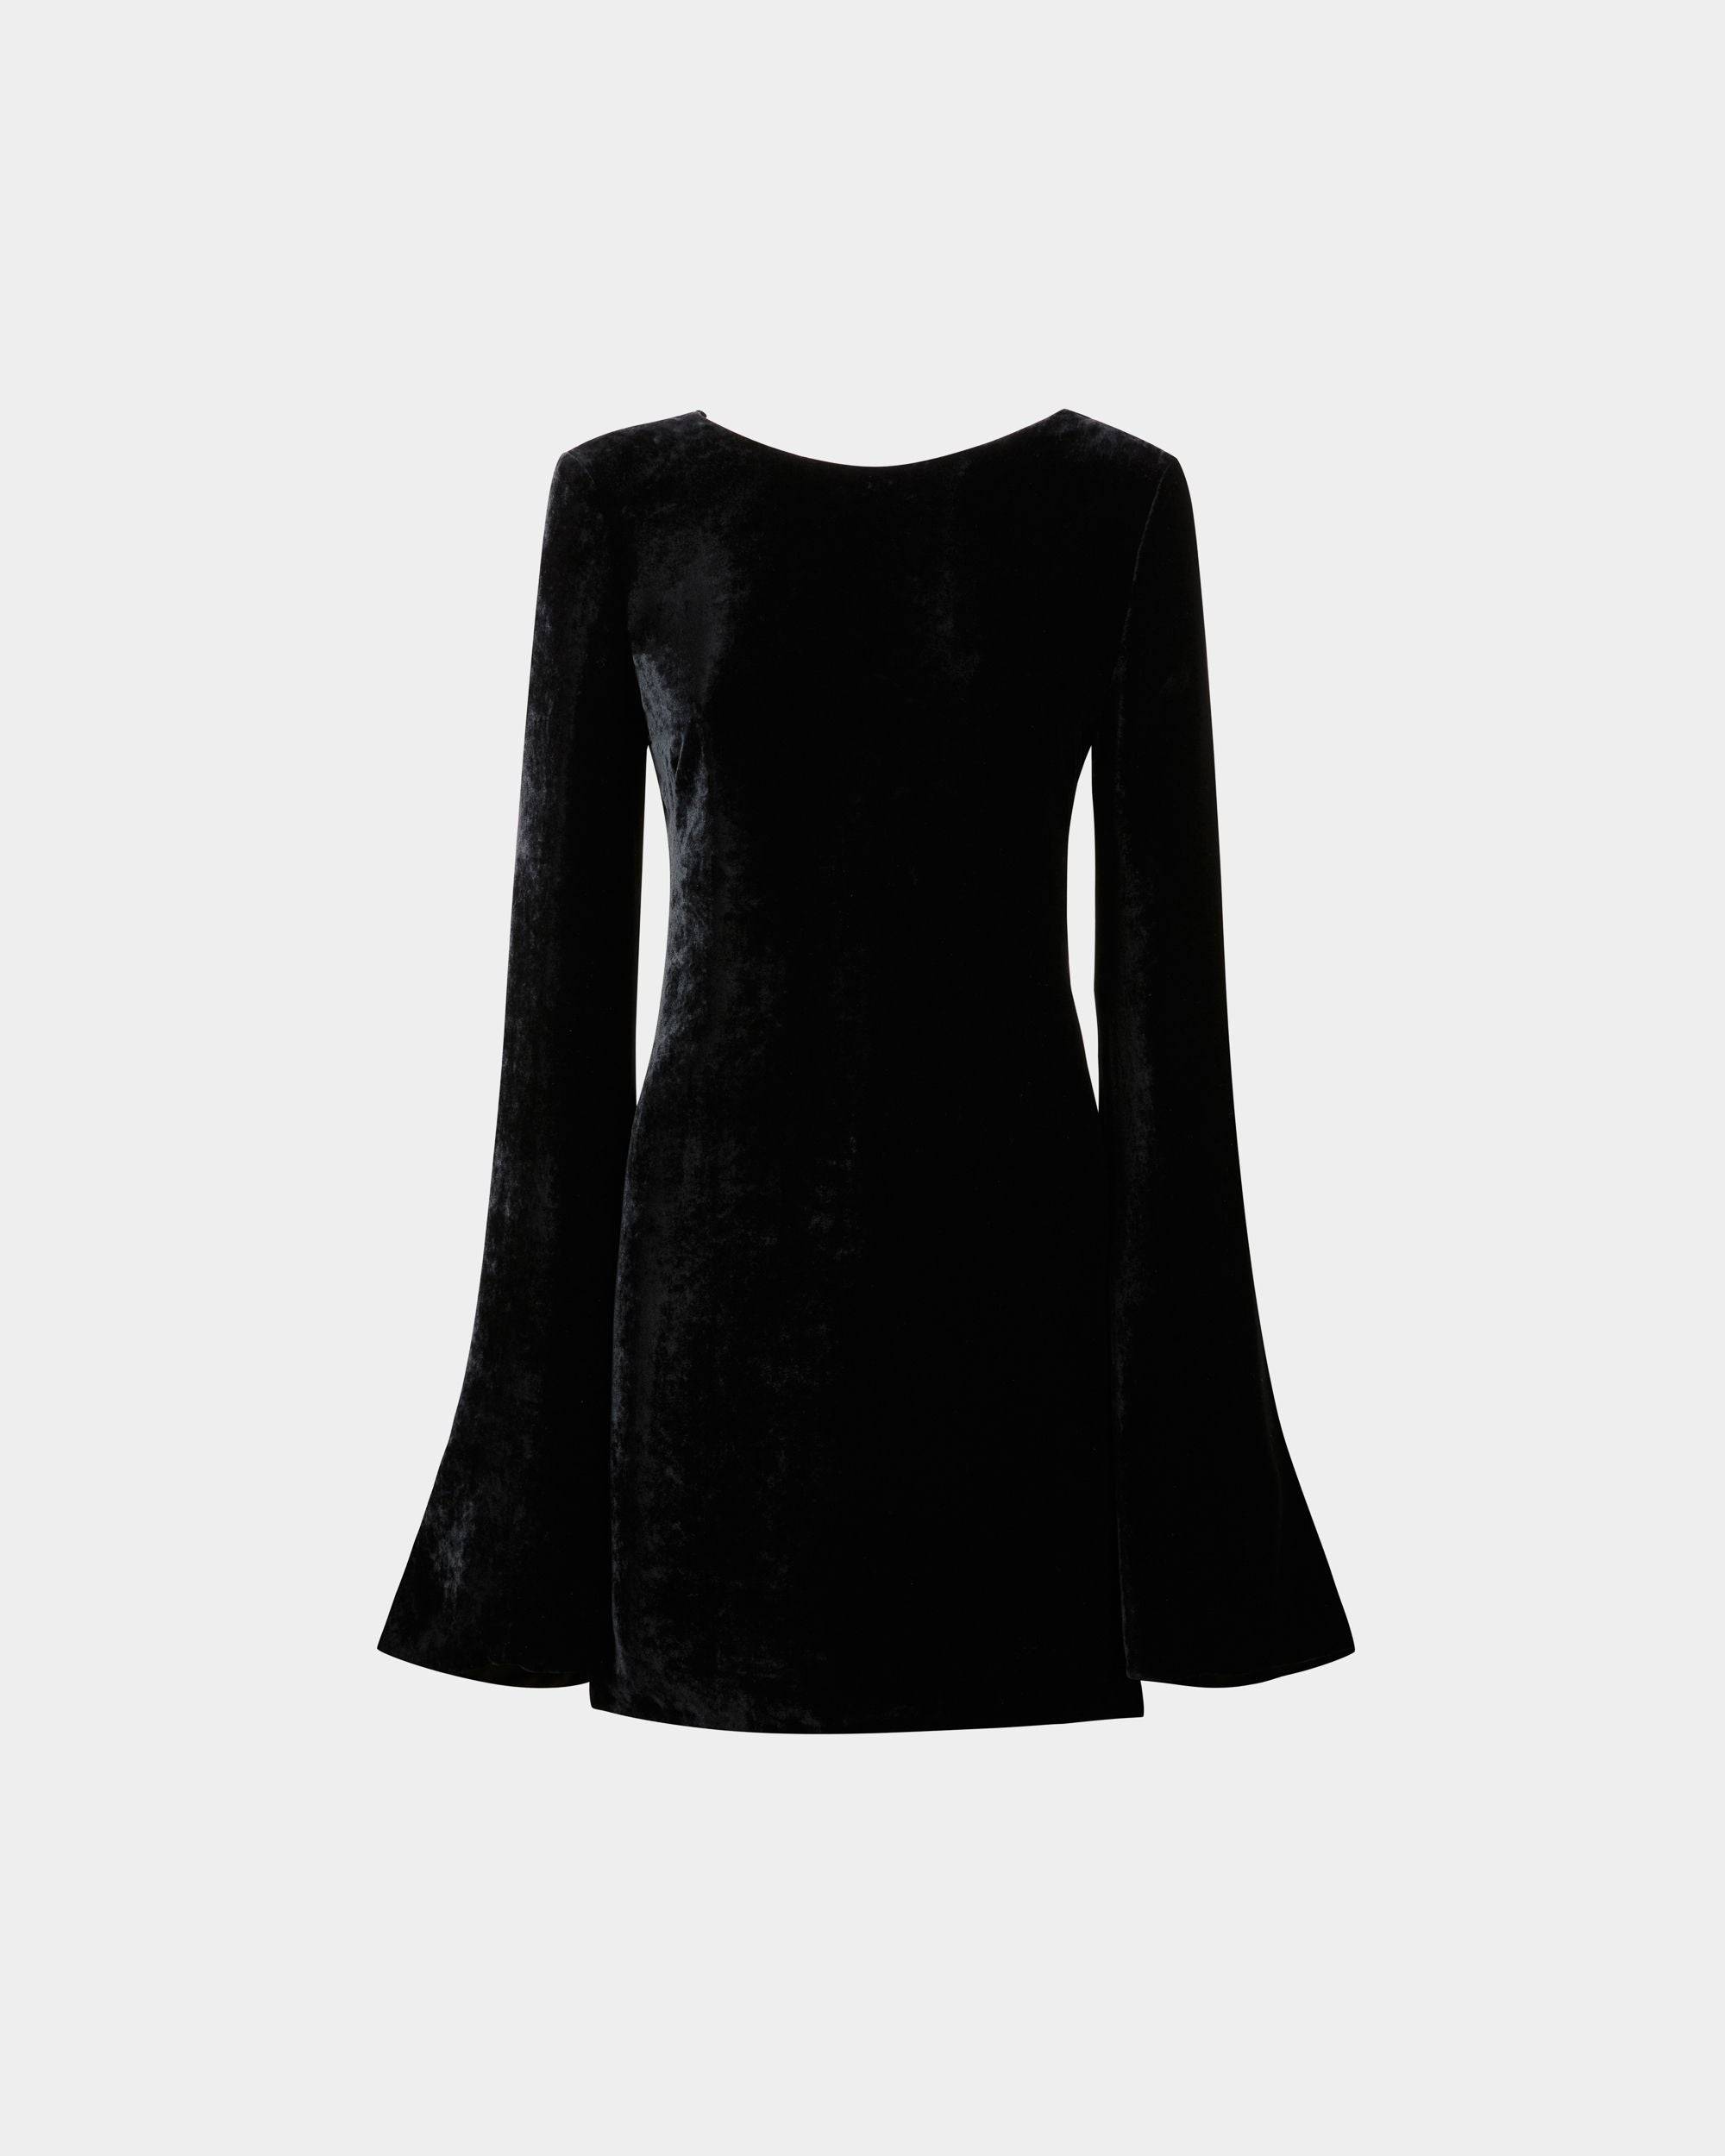 Women's Mini Dress in Black Velvet | Bally | Still Life Front